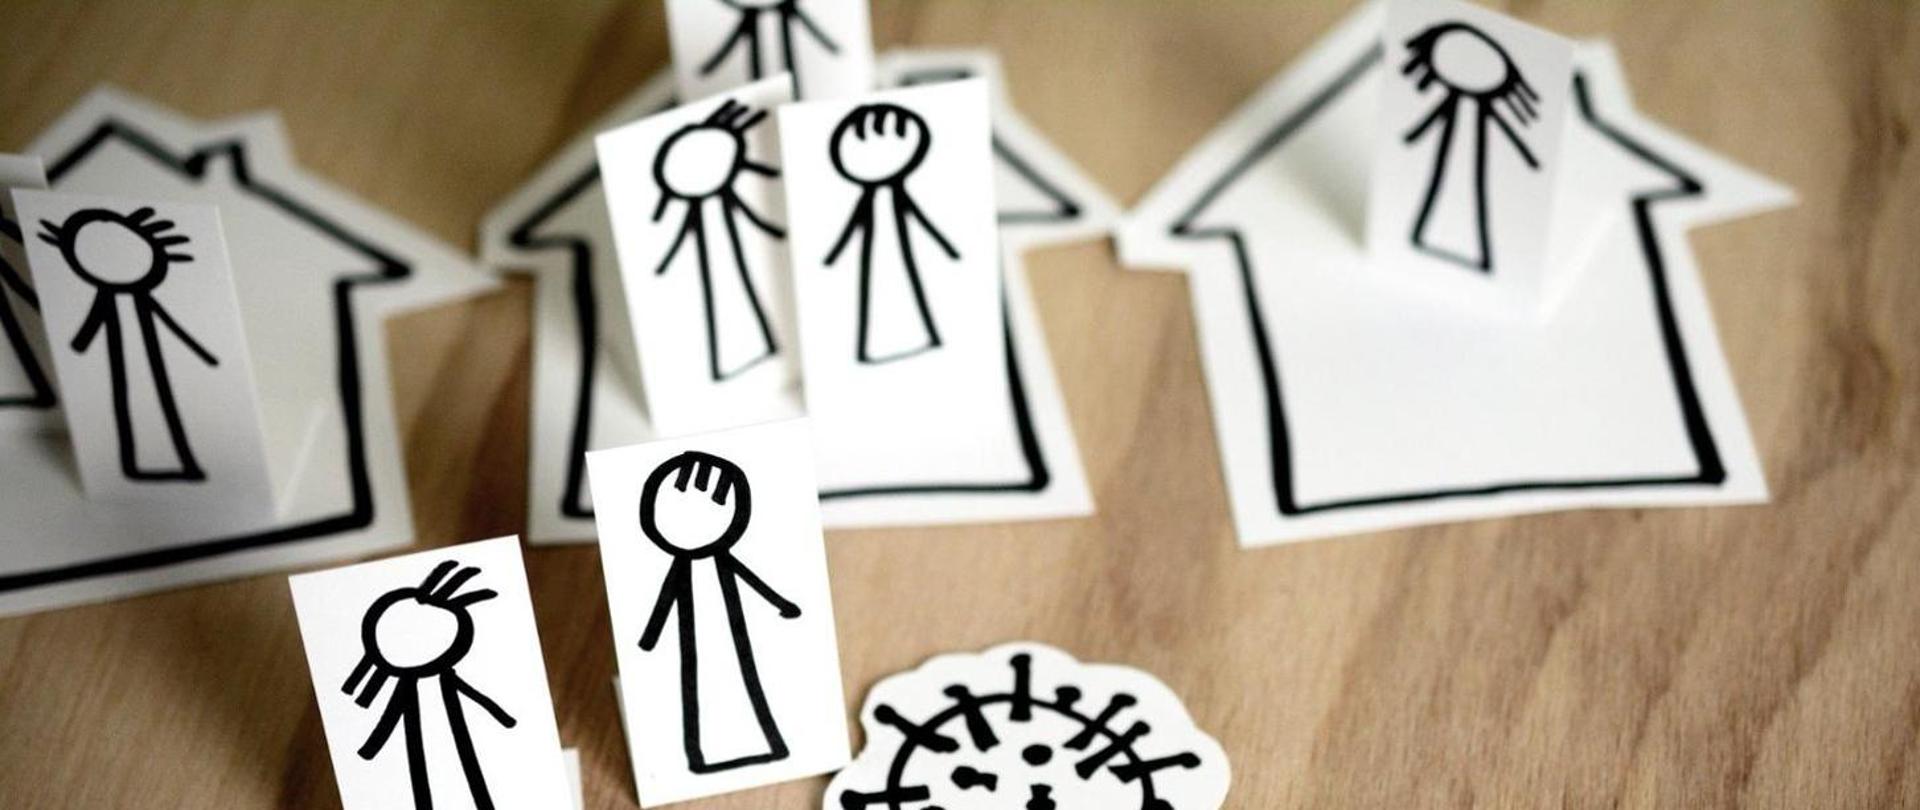 Białe karteczki z namalowanymi czarnym flamastrem postaciami ludzi. Karteczki stoją na drewnianym stole i są poustawiane w domach leżących na stole i poza nimi (domy są namalowane na kartkach, wyciętych w tym samym kształcie).